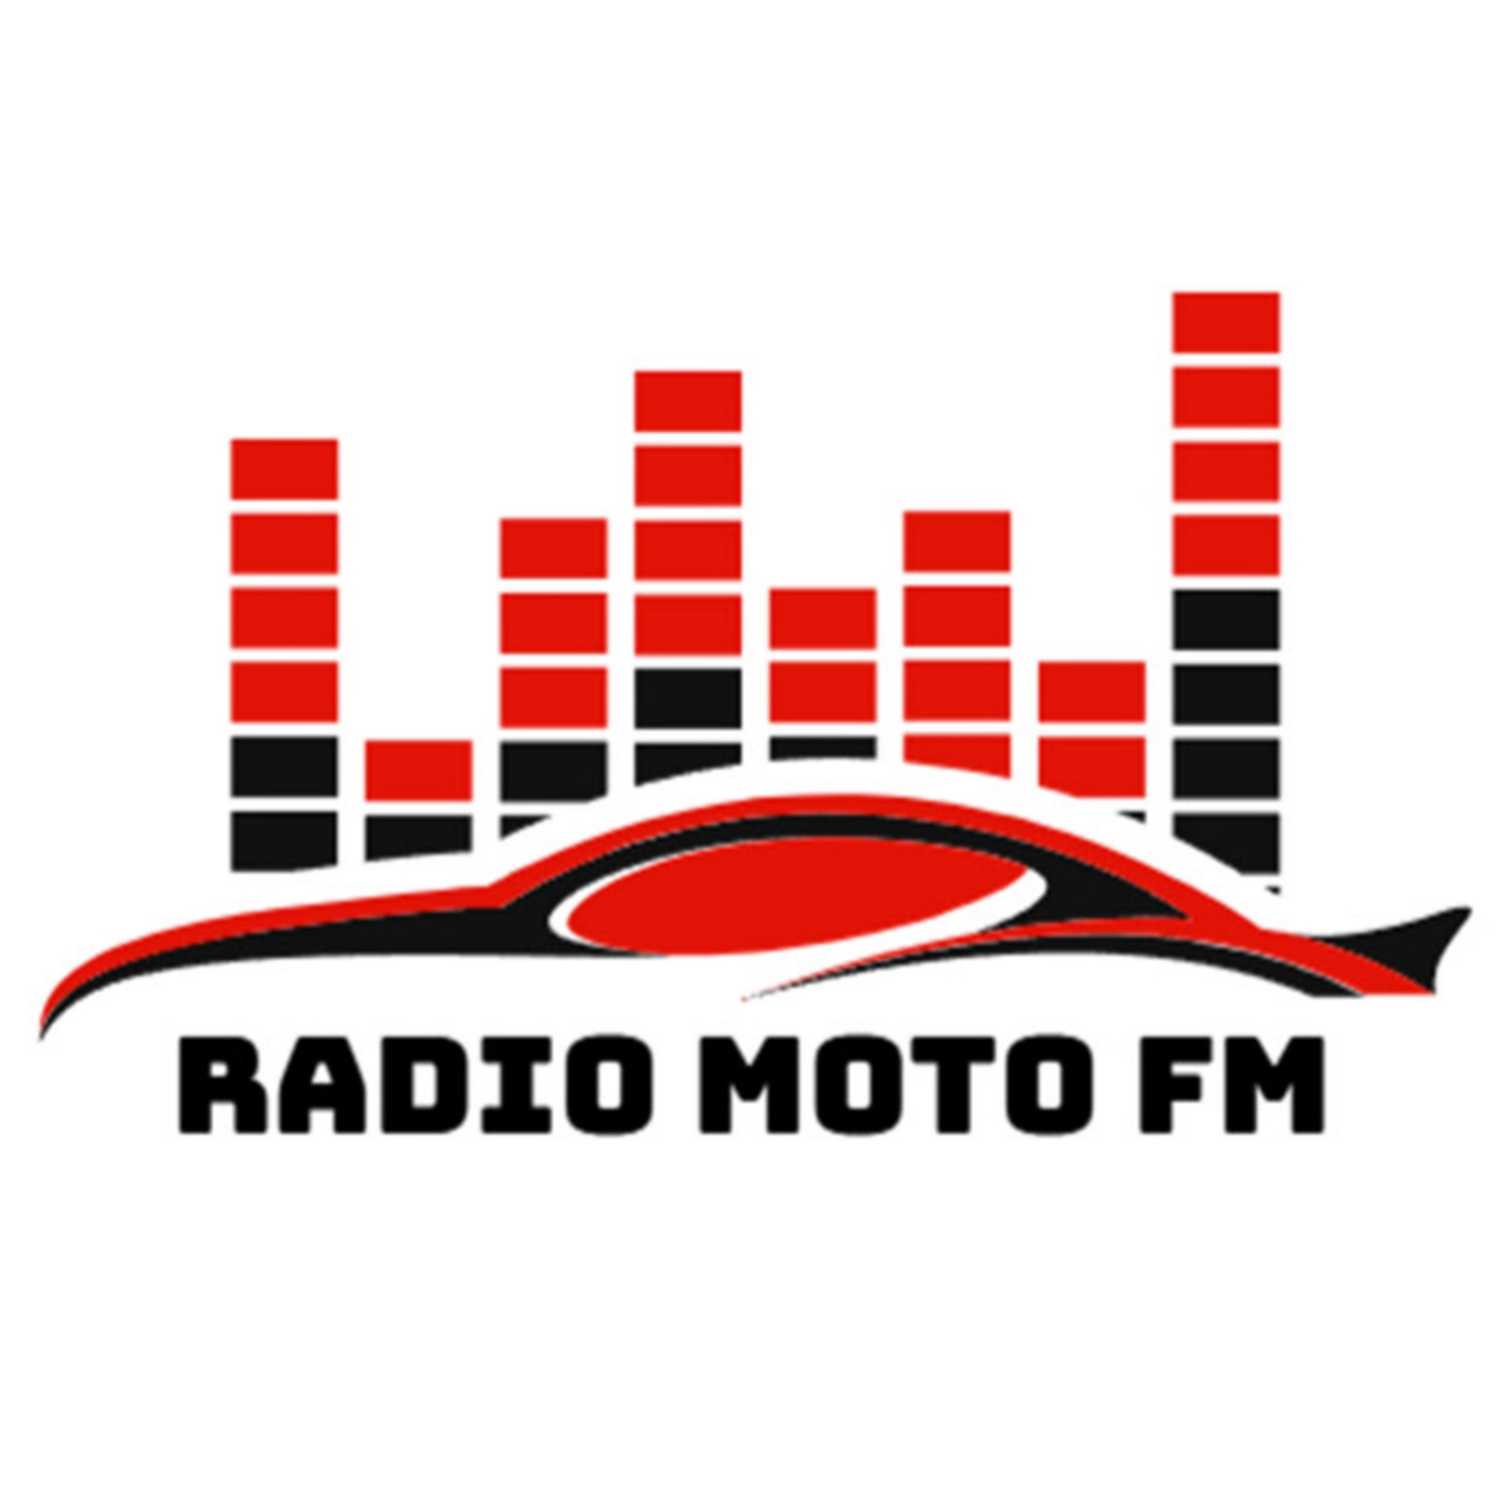 Radio Moto FM Podcast